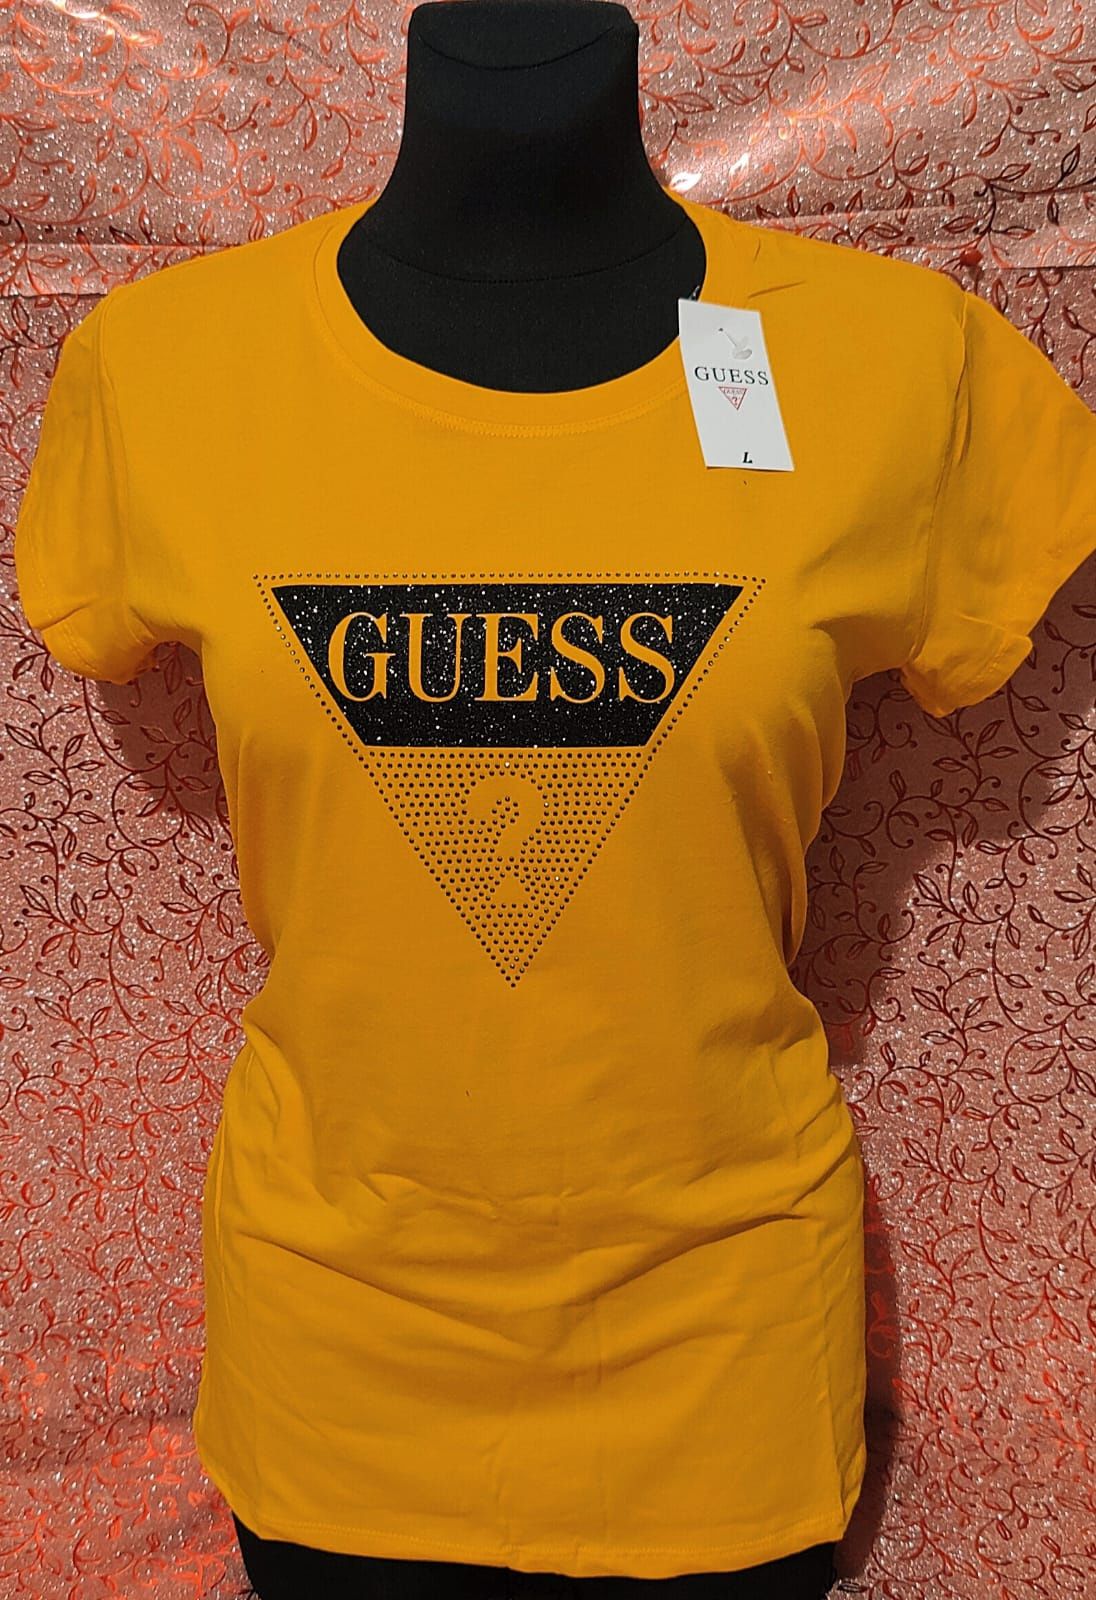 Żółta koszulka damska Guess S M L XL wysyłka pobranie bardzo ładna hit